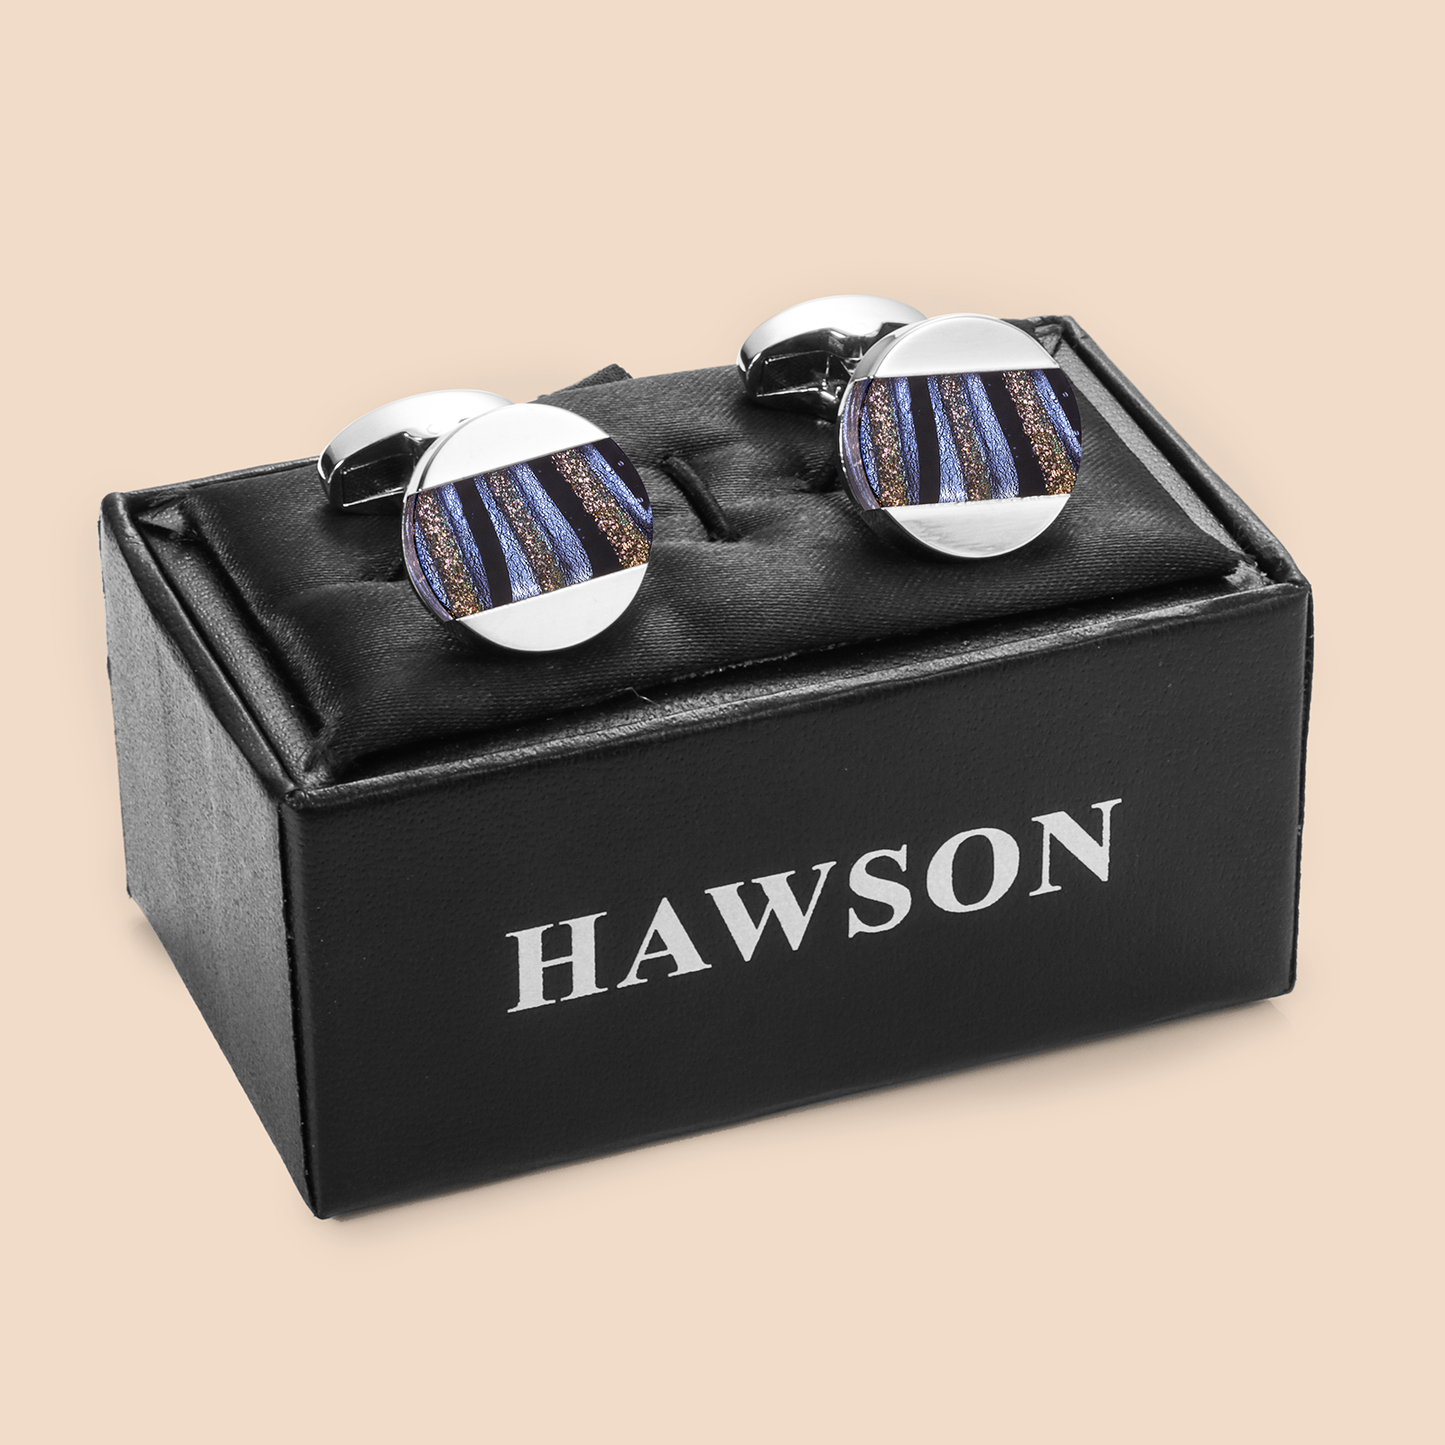 HAWSON Fancy Glazed Stone Cufflinks